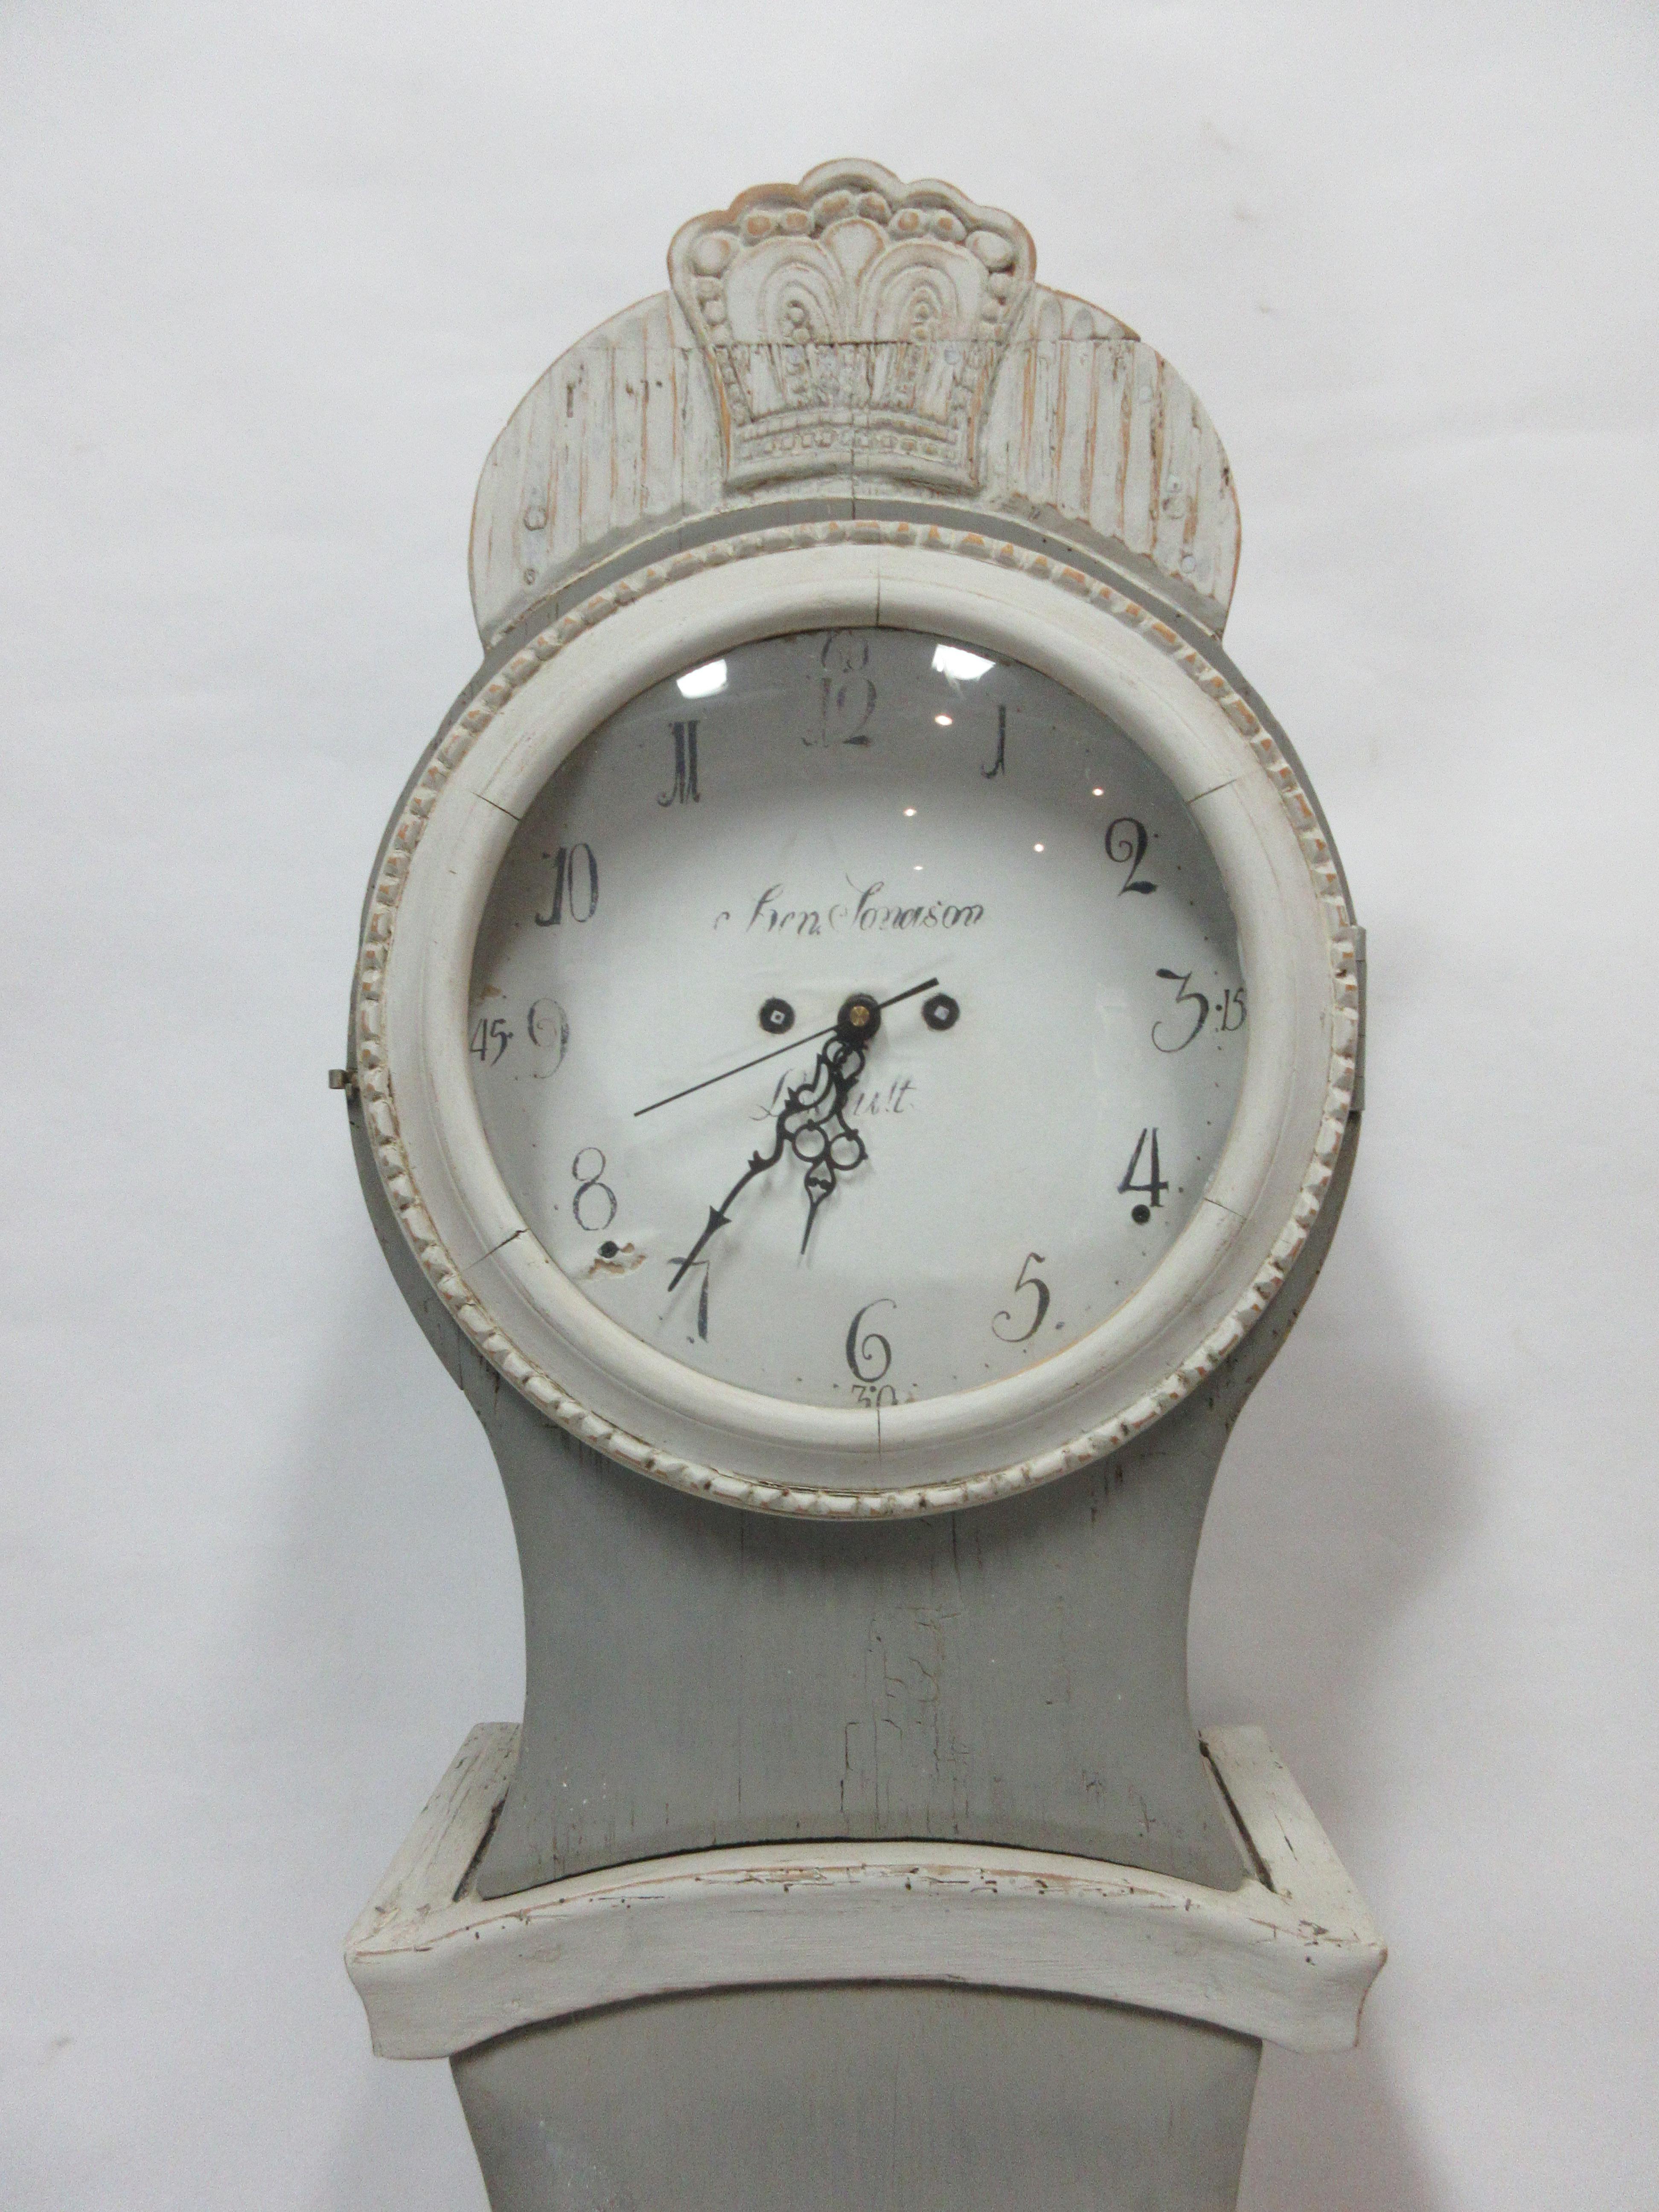 Dies ist eine 100% original bemalte schwedische Mora-Uhr. Der Stil dieser Uhr wird 